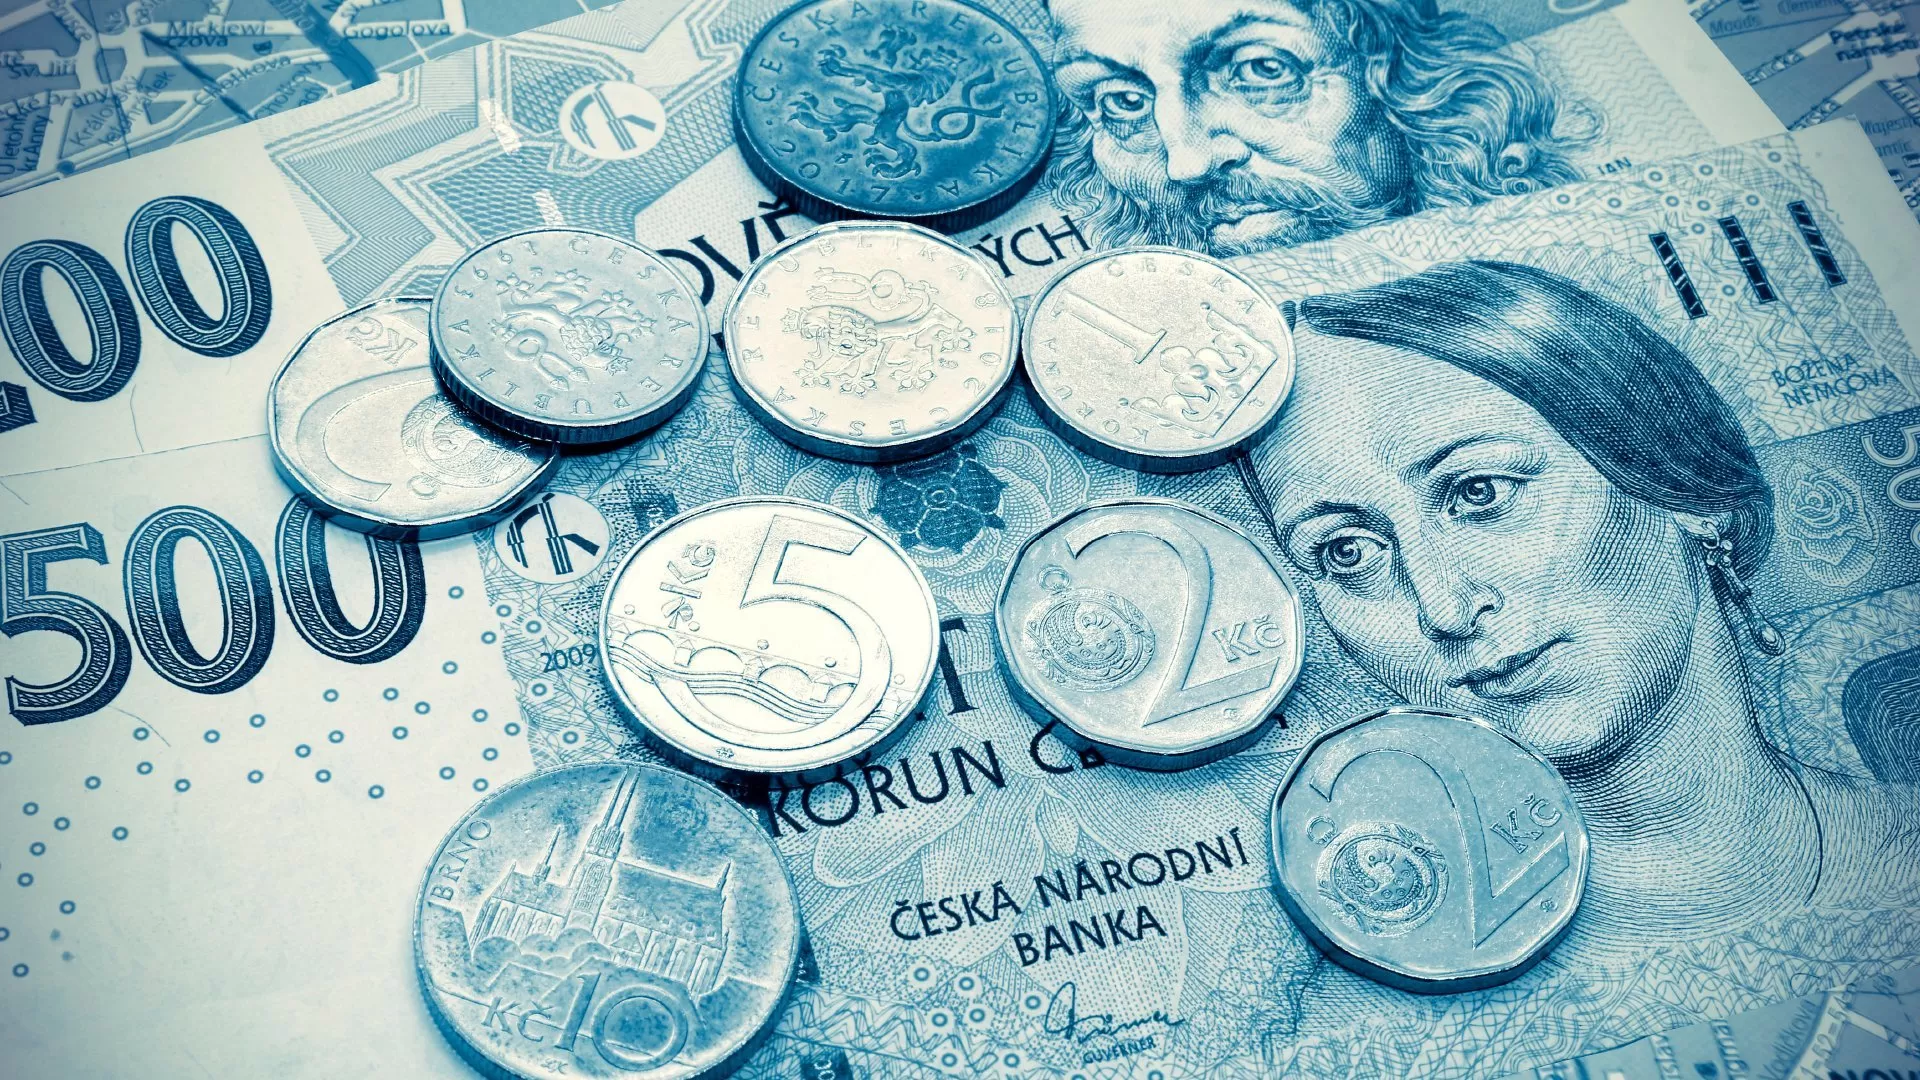 Co jste (ne)věděli o českých bankovkách a mincích